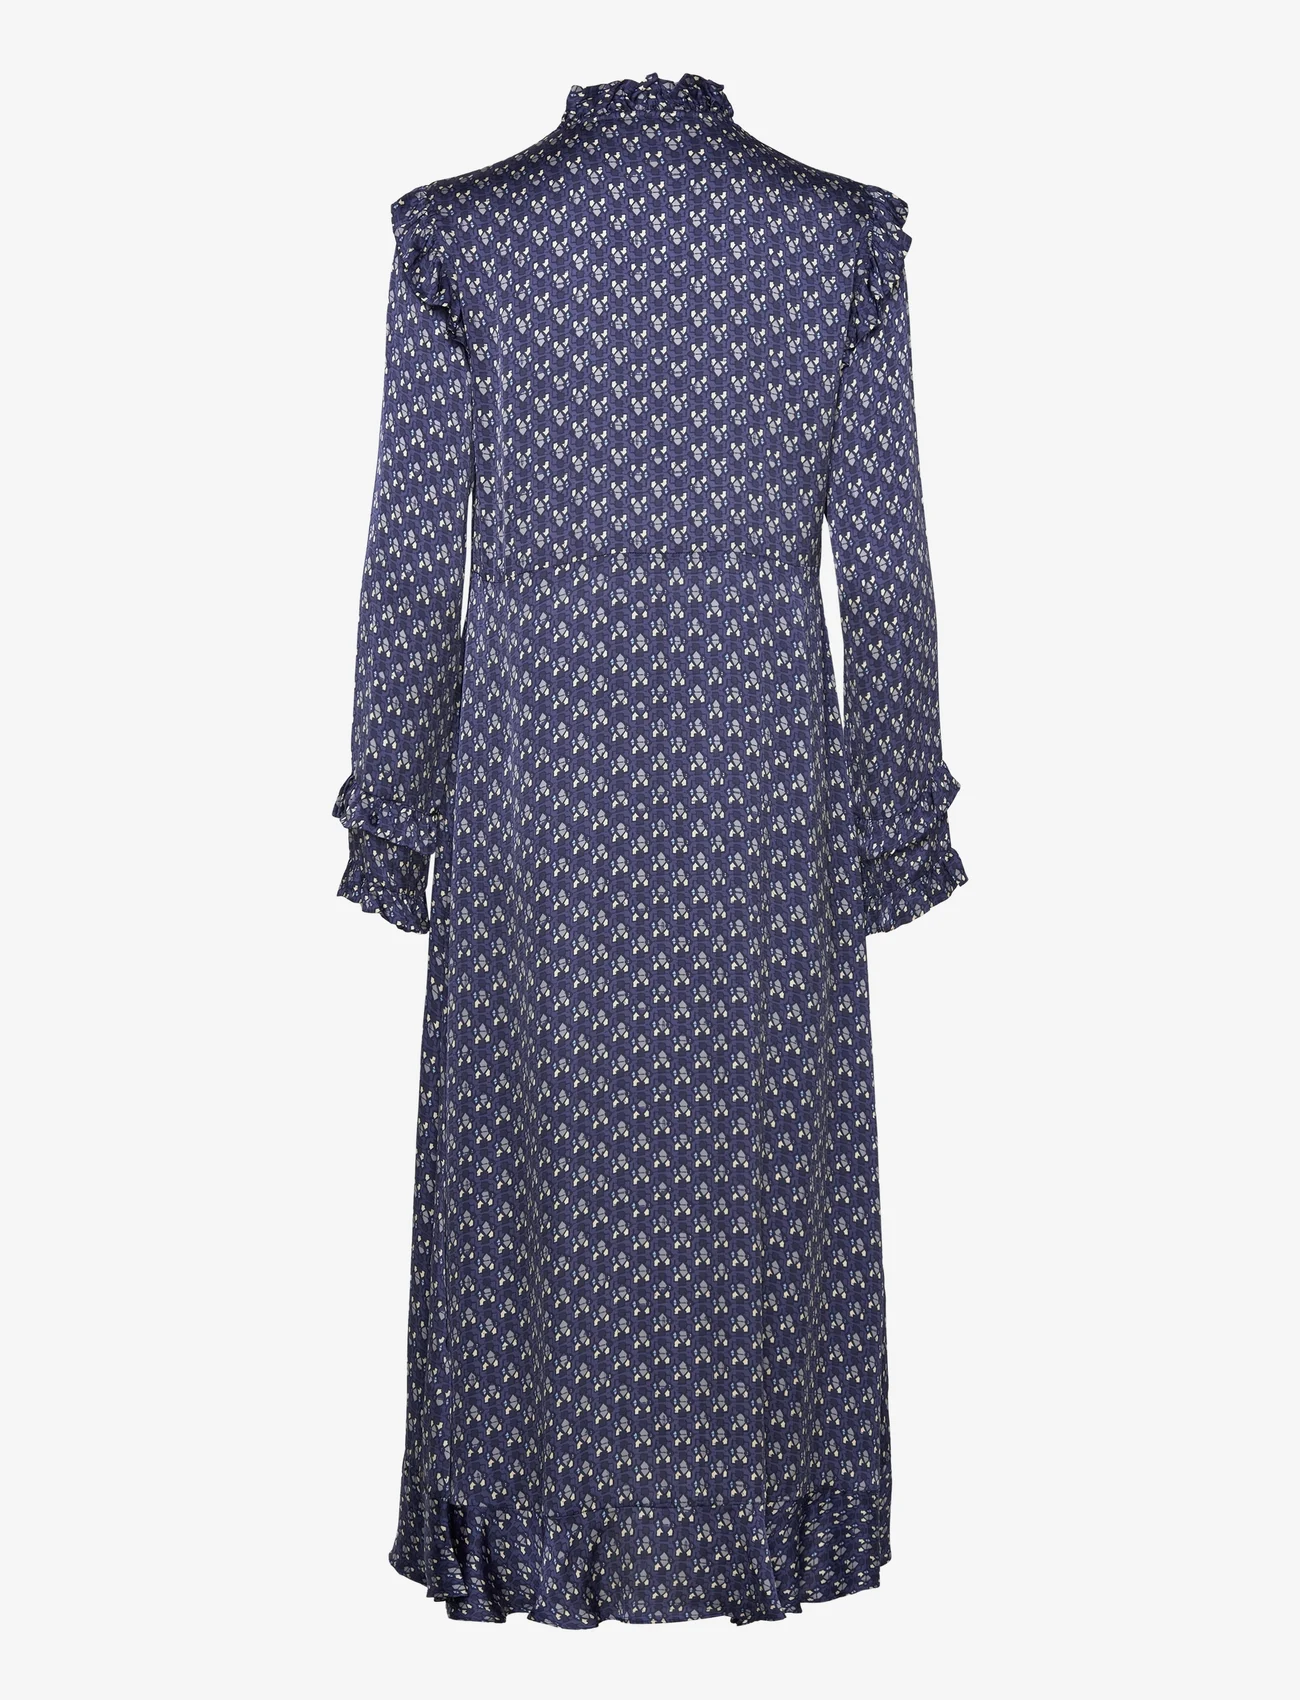 ODD MOLLY - Rachael Dress - festkläder till outletpriser - stormy blue - 1